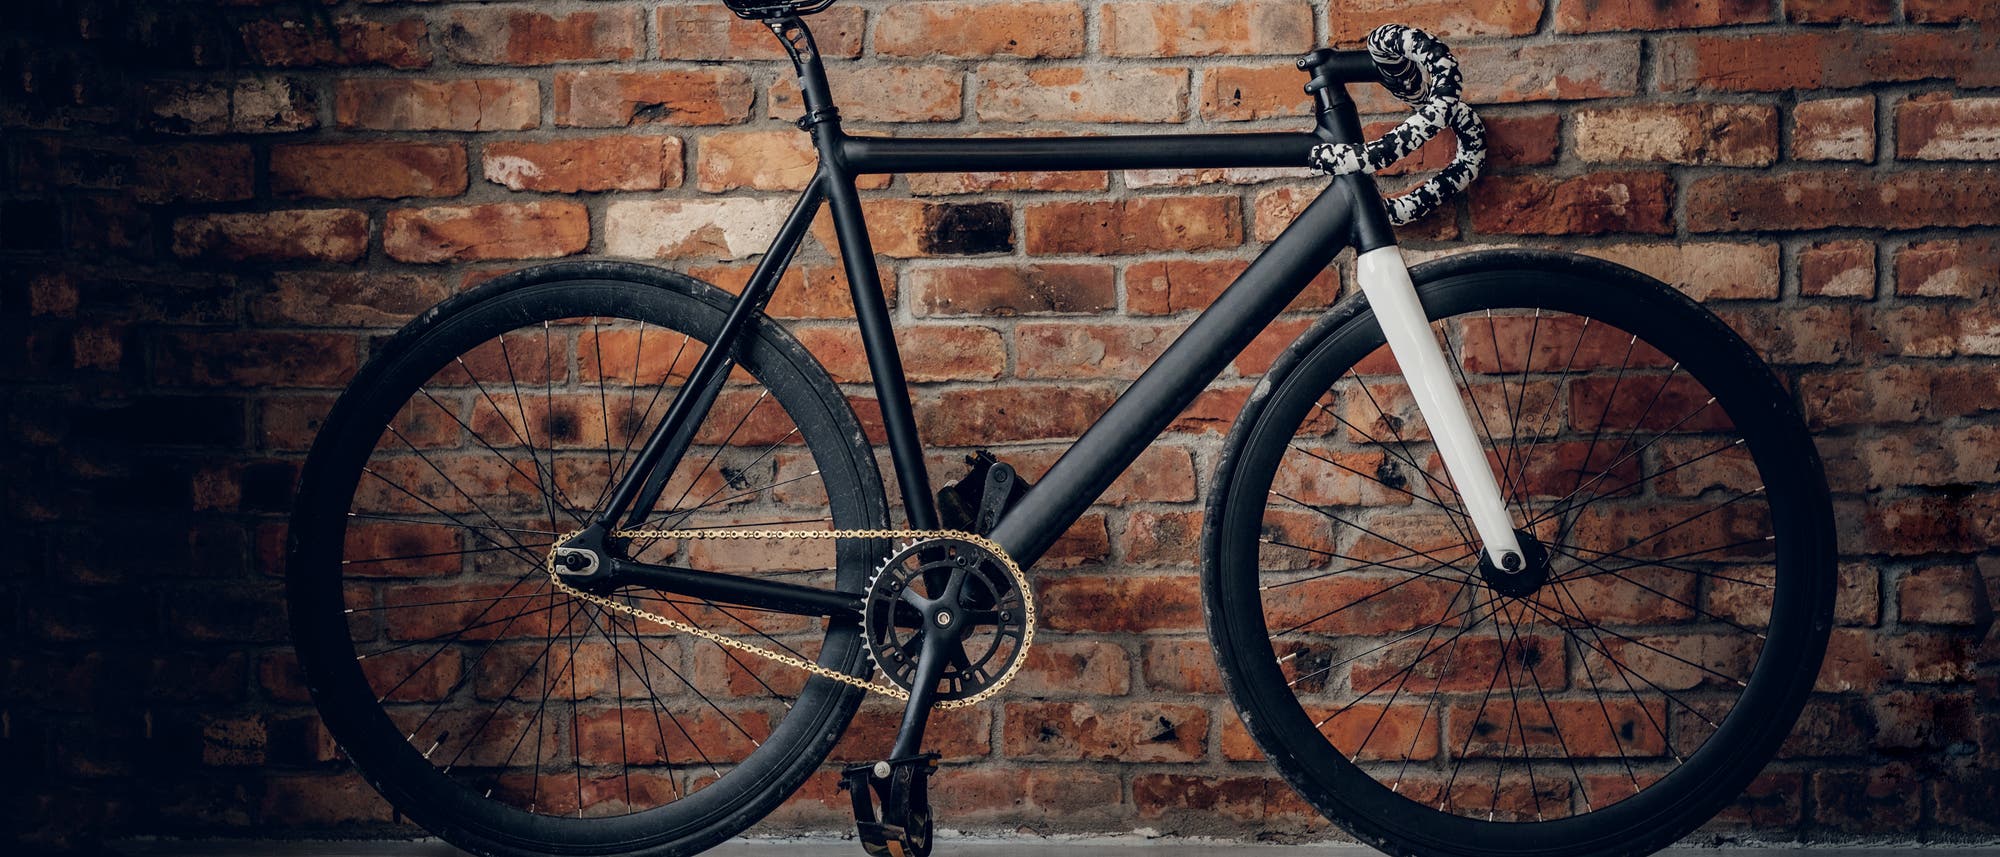 Neue Materialien machen Fahrräder leichter und robuster